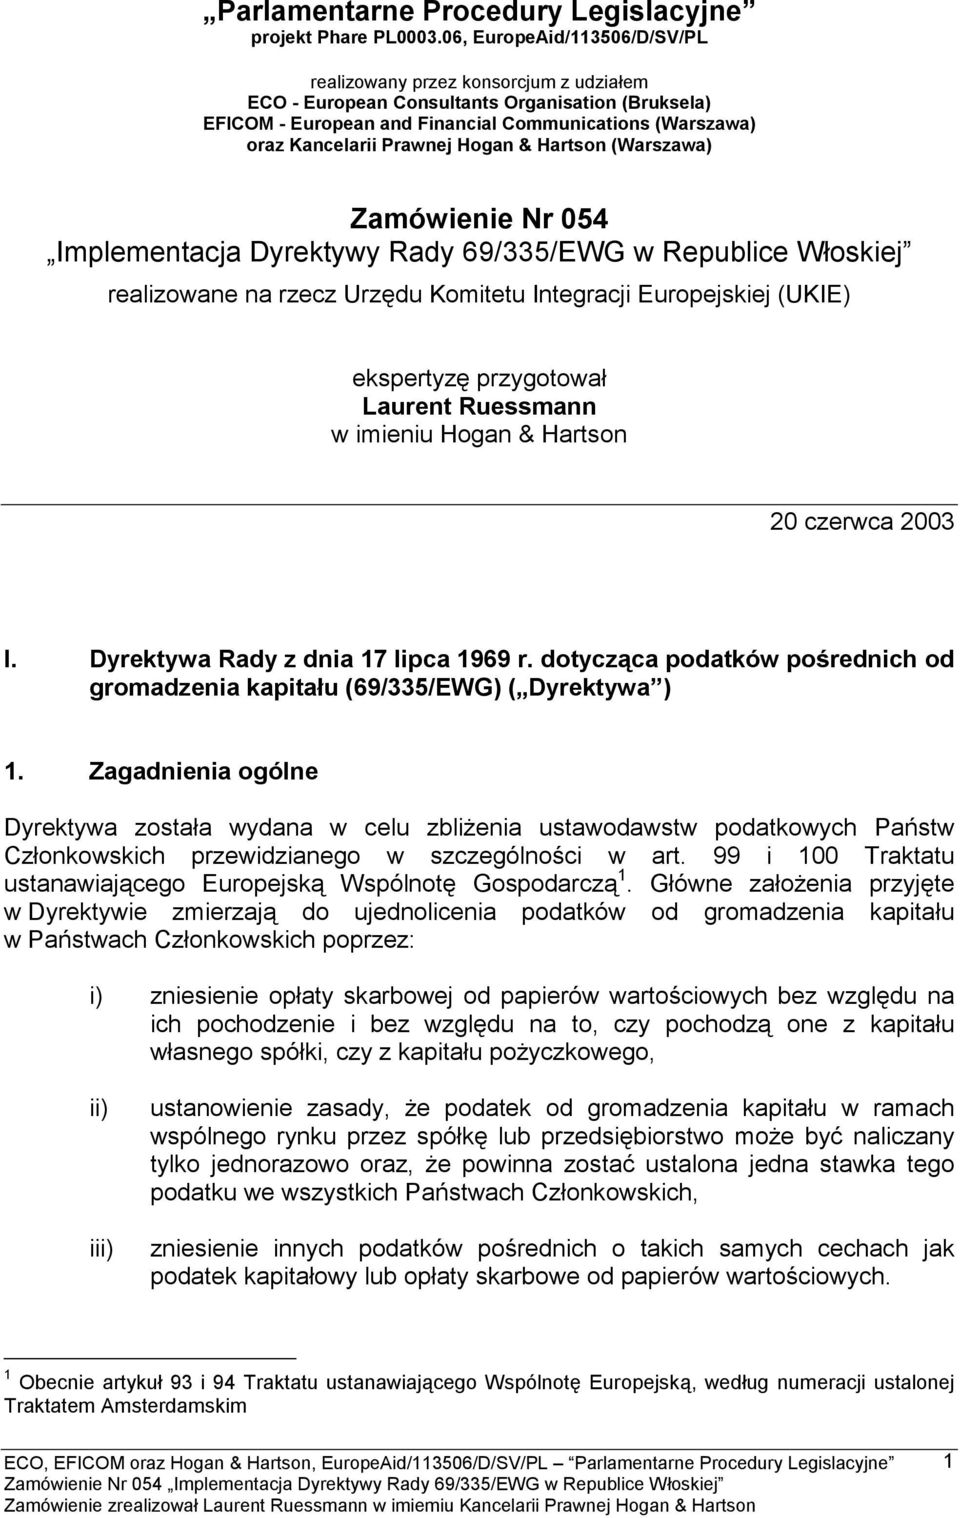 Prawnej Hogan & Hartson (Warszawa) Zamówienie Nr 054 Implementacja Dyrektywy Rady 69/335/EWG w Republice Włoskiej realizowane na rzecz Urzędu Komitetu Integracji Europejskiej (UKIE) ekspertyzę